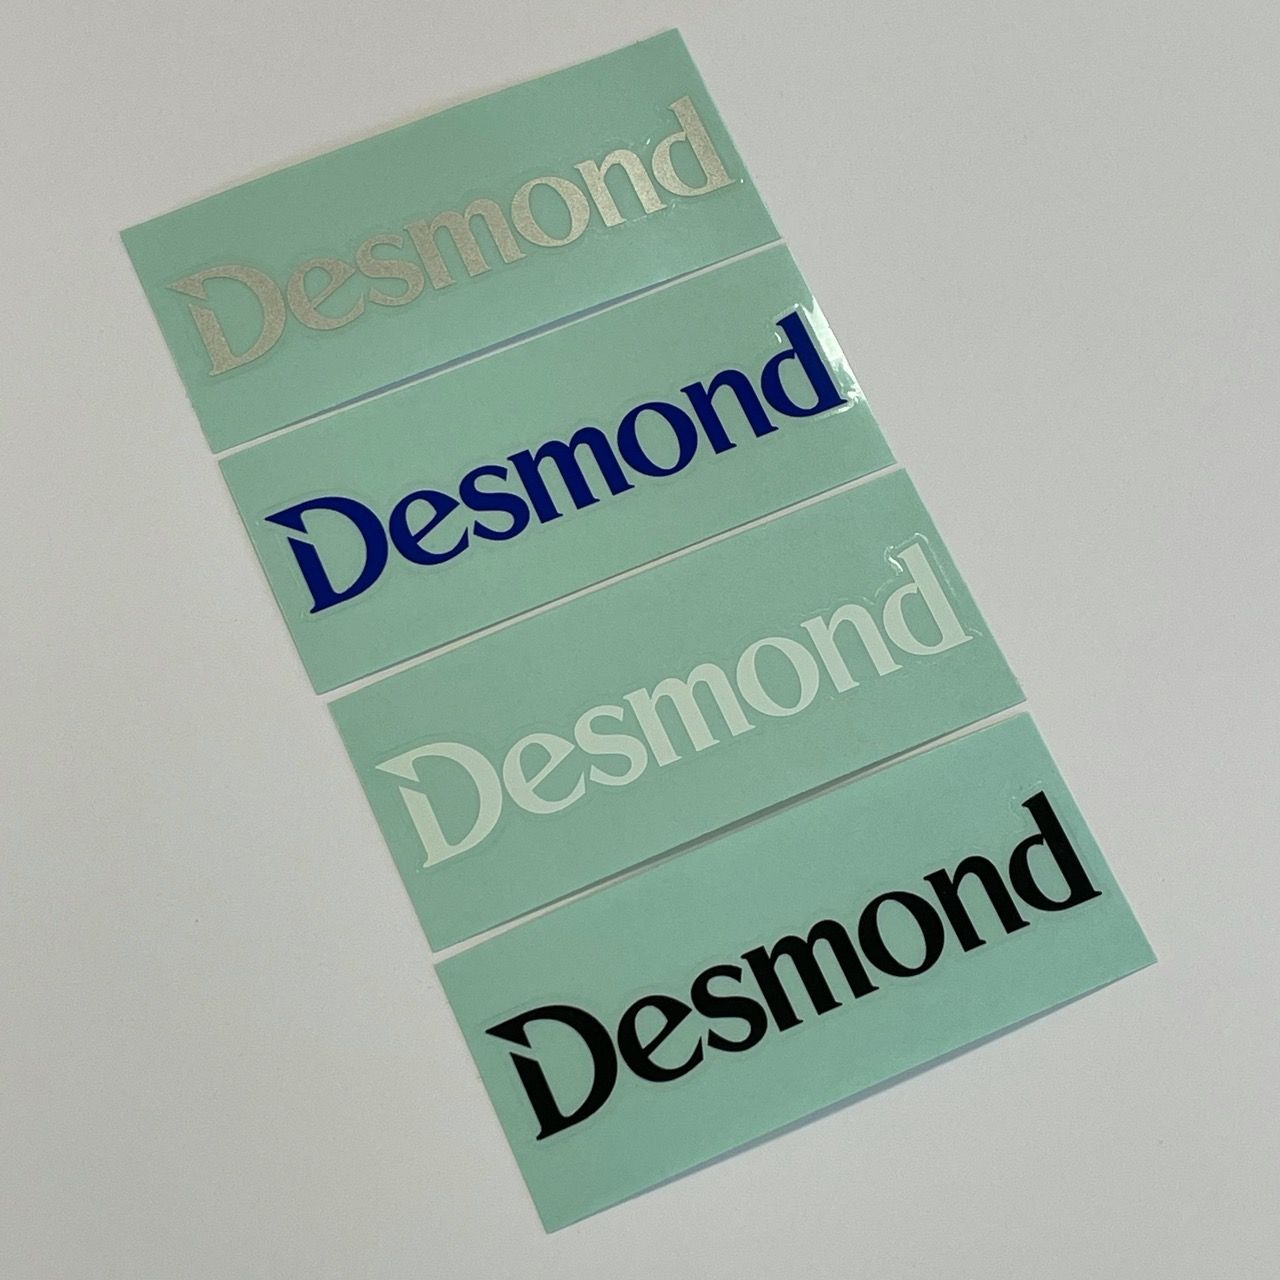 Desmond Spoke Decals